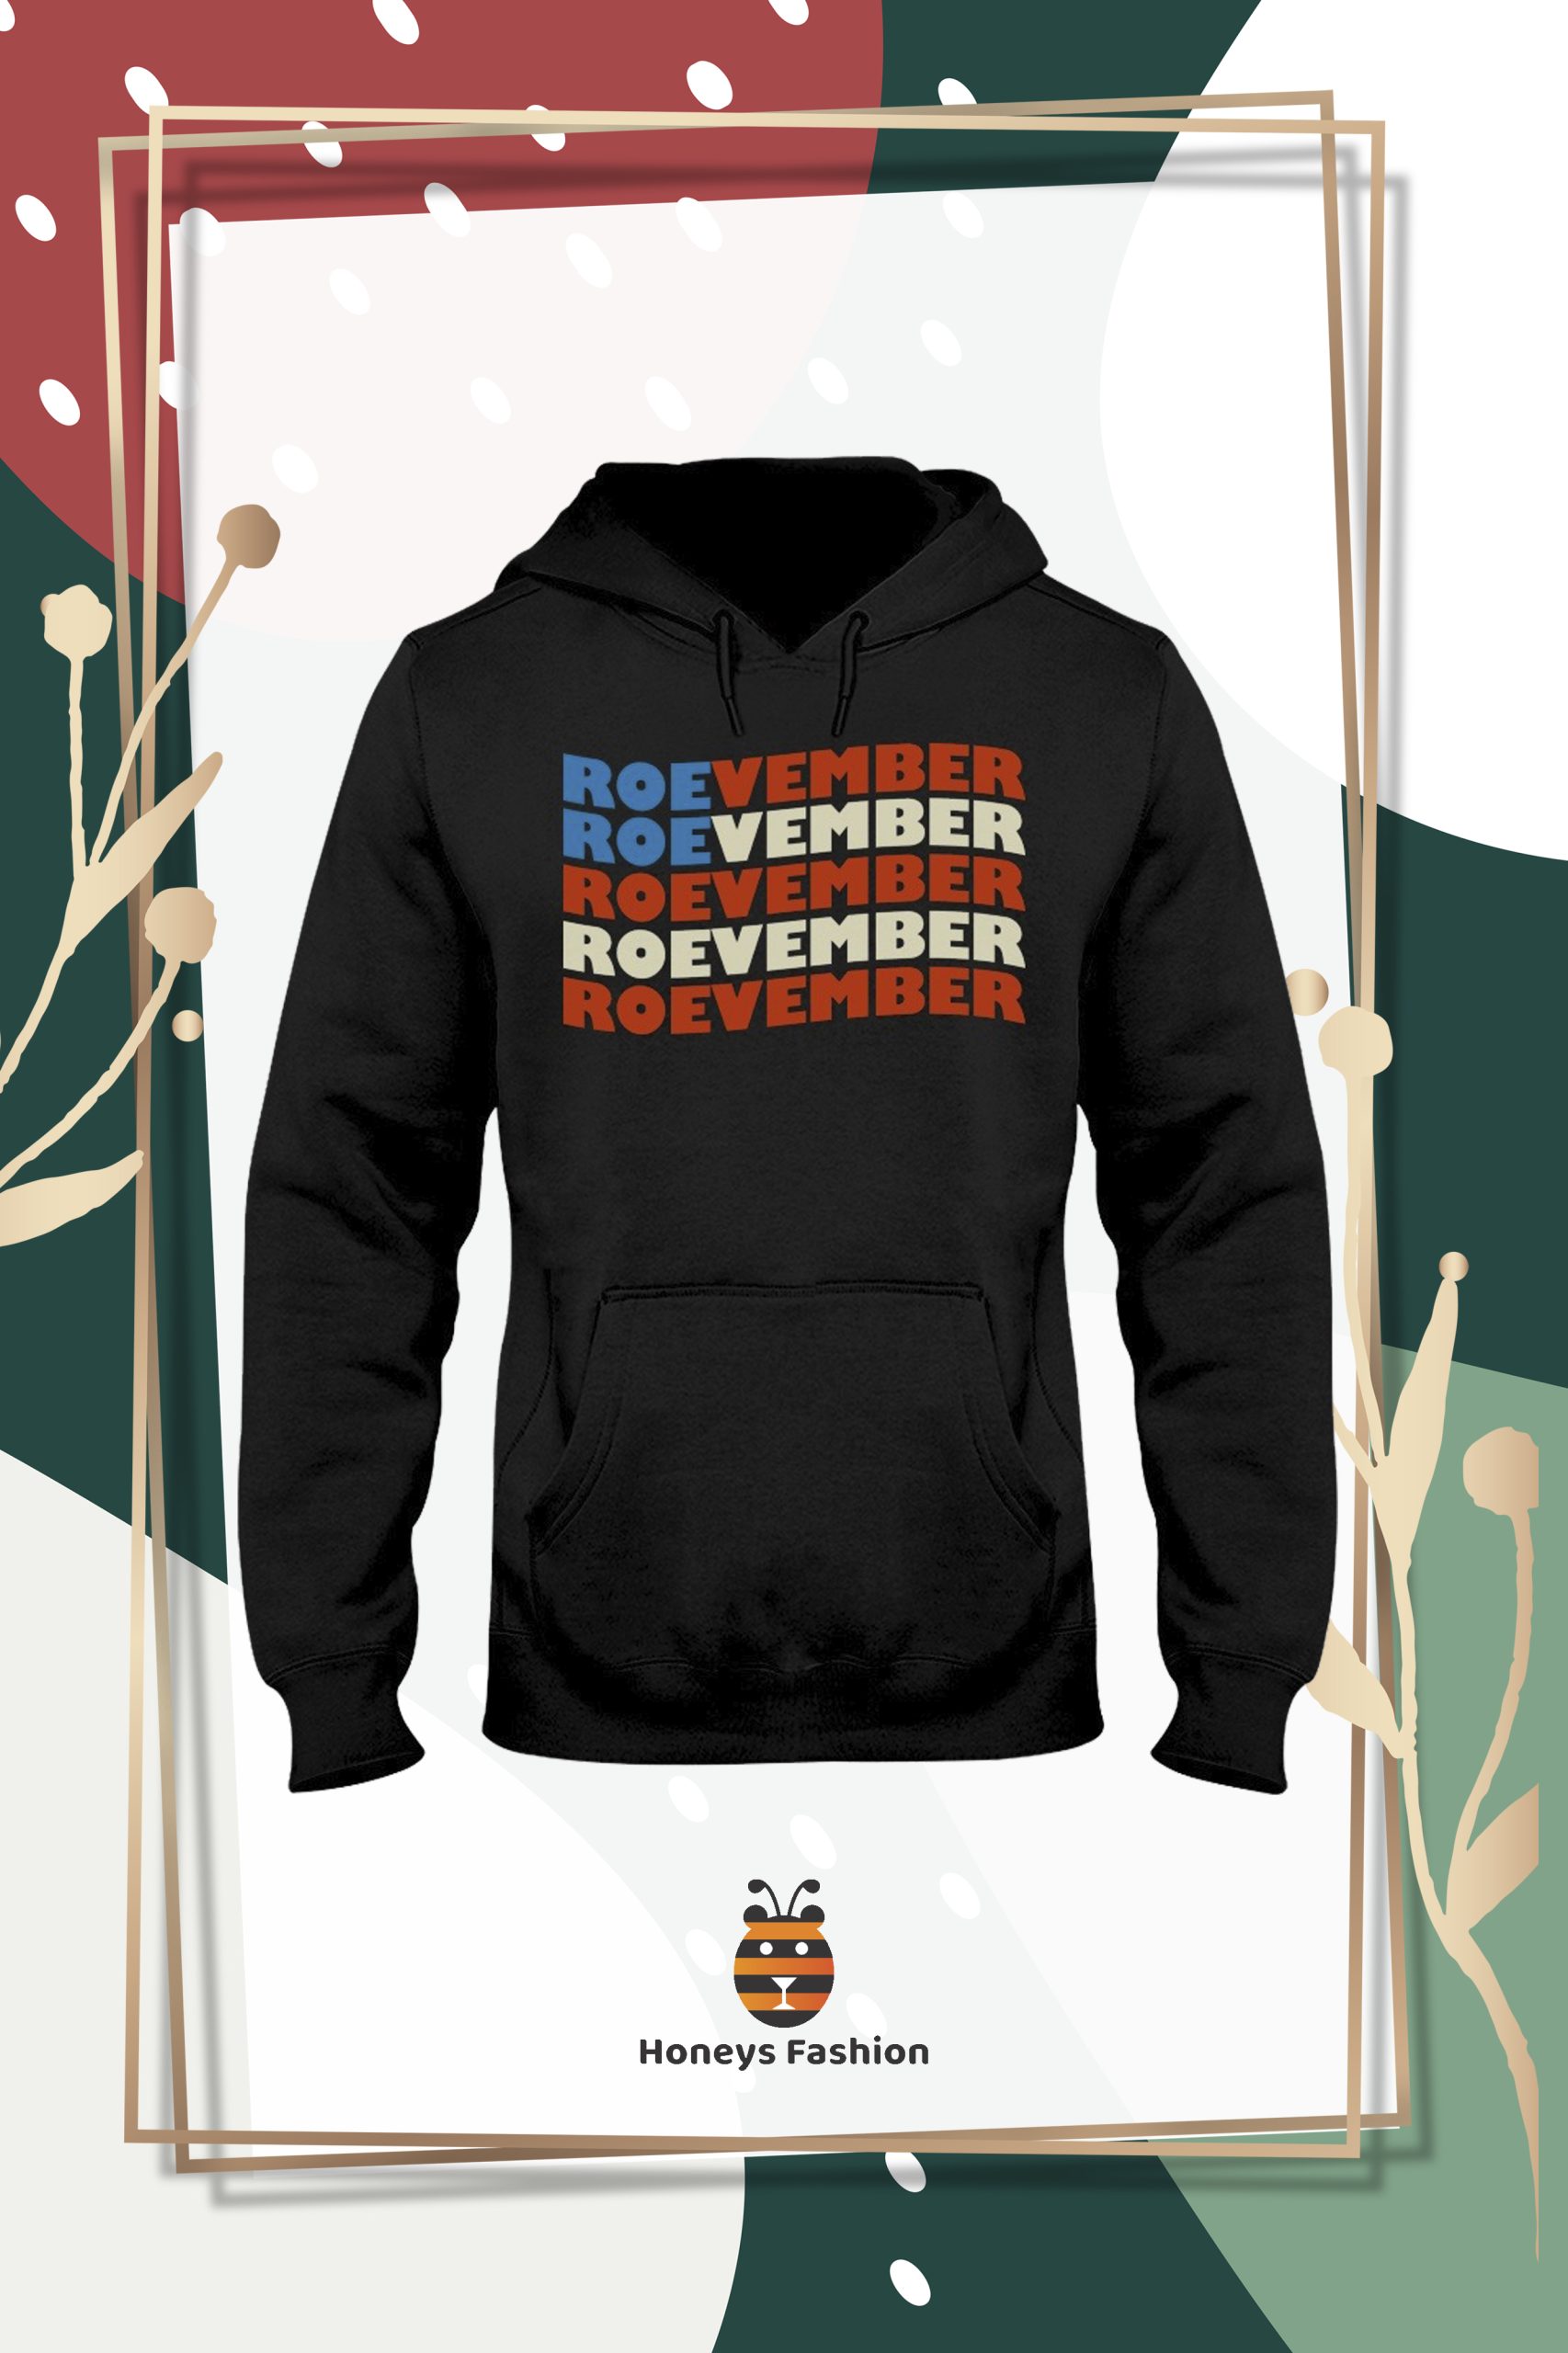 Roevember Classic shirt hoodie